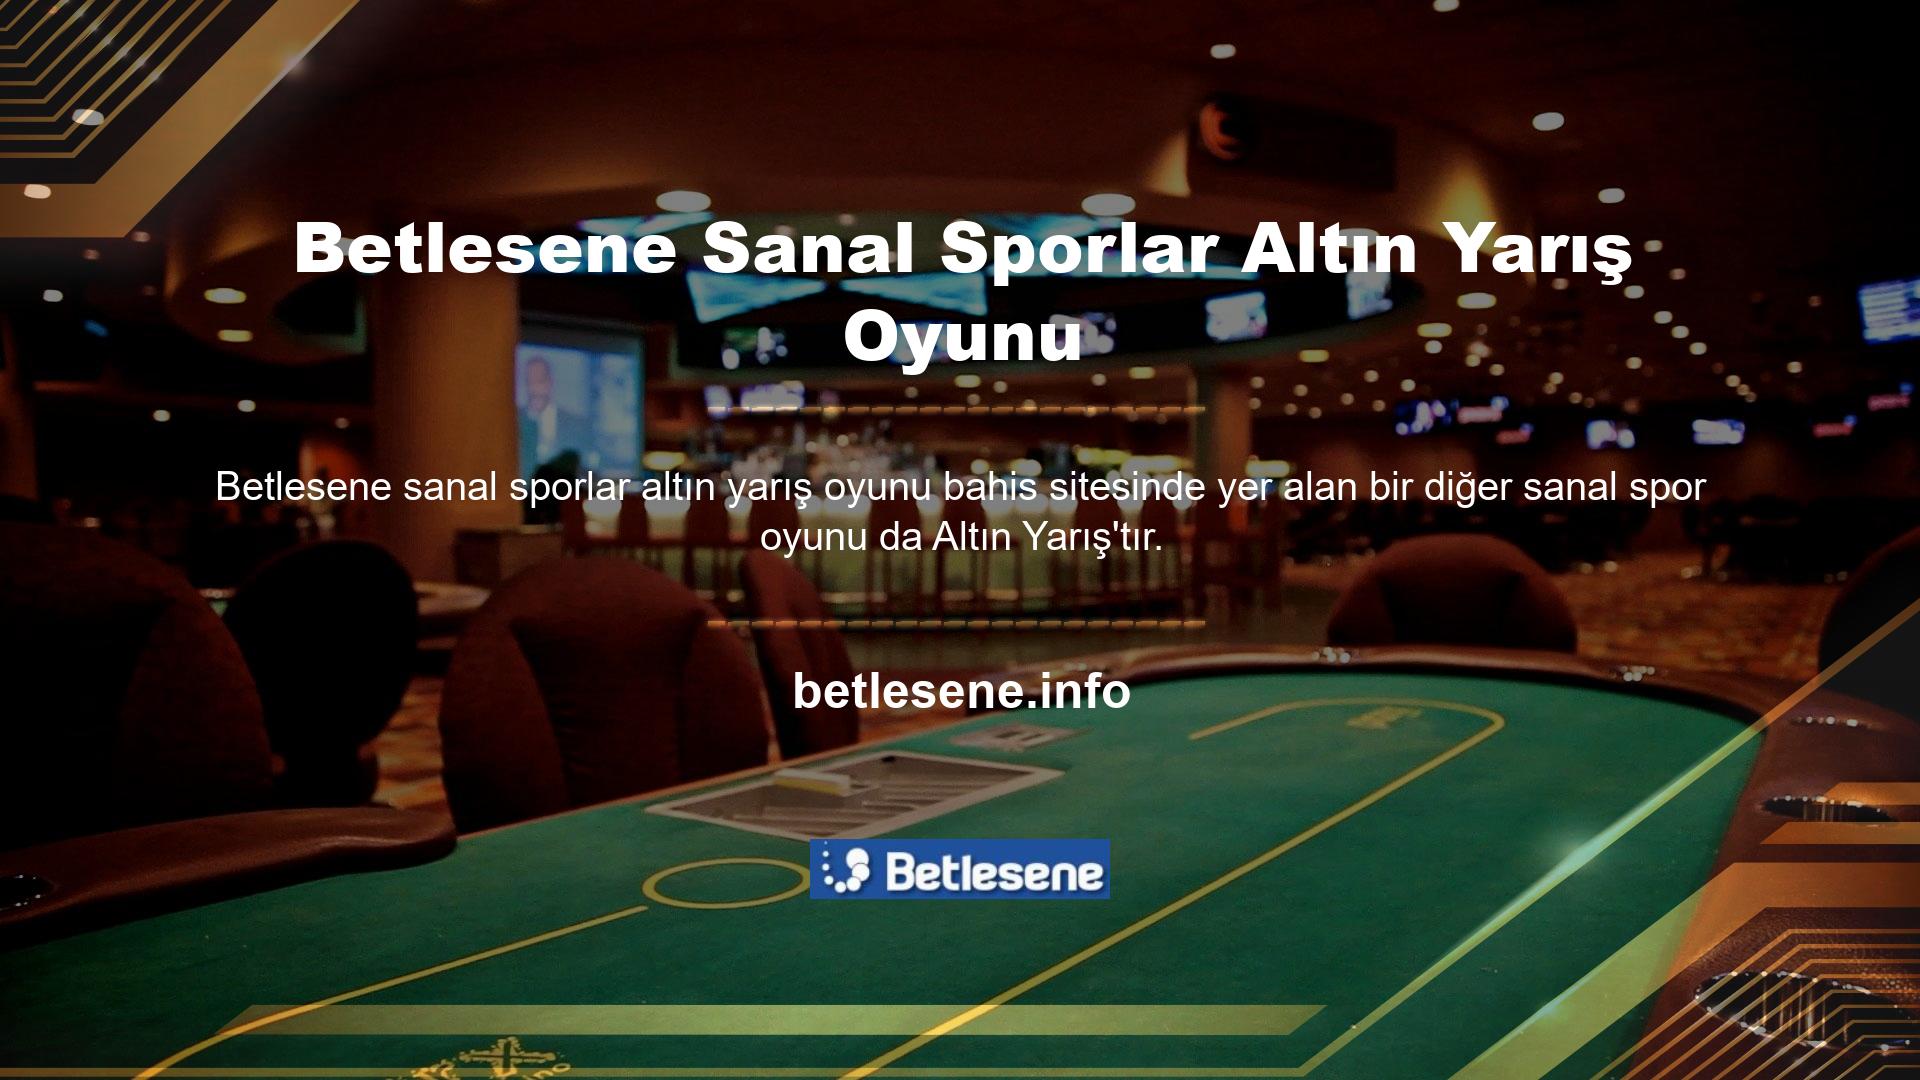 “Altın Yarış” oyun alanı da sanal casino kategorisine girmektedir